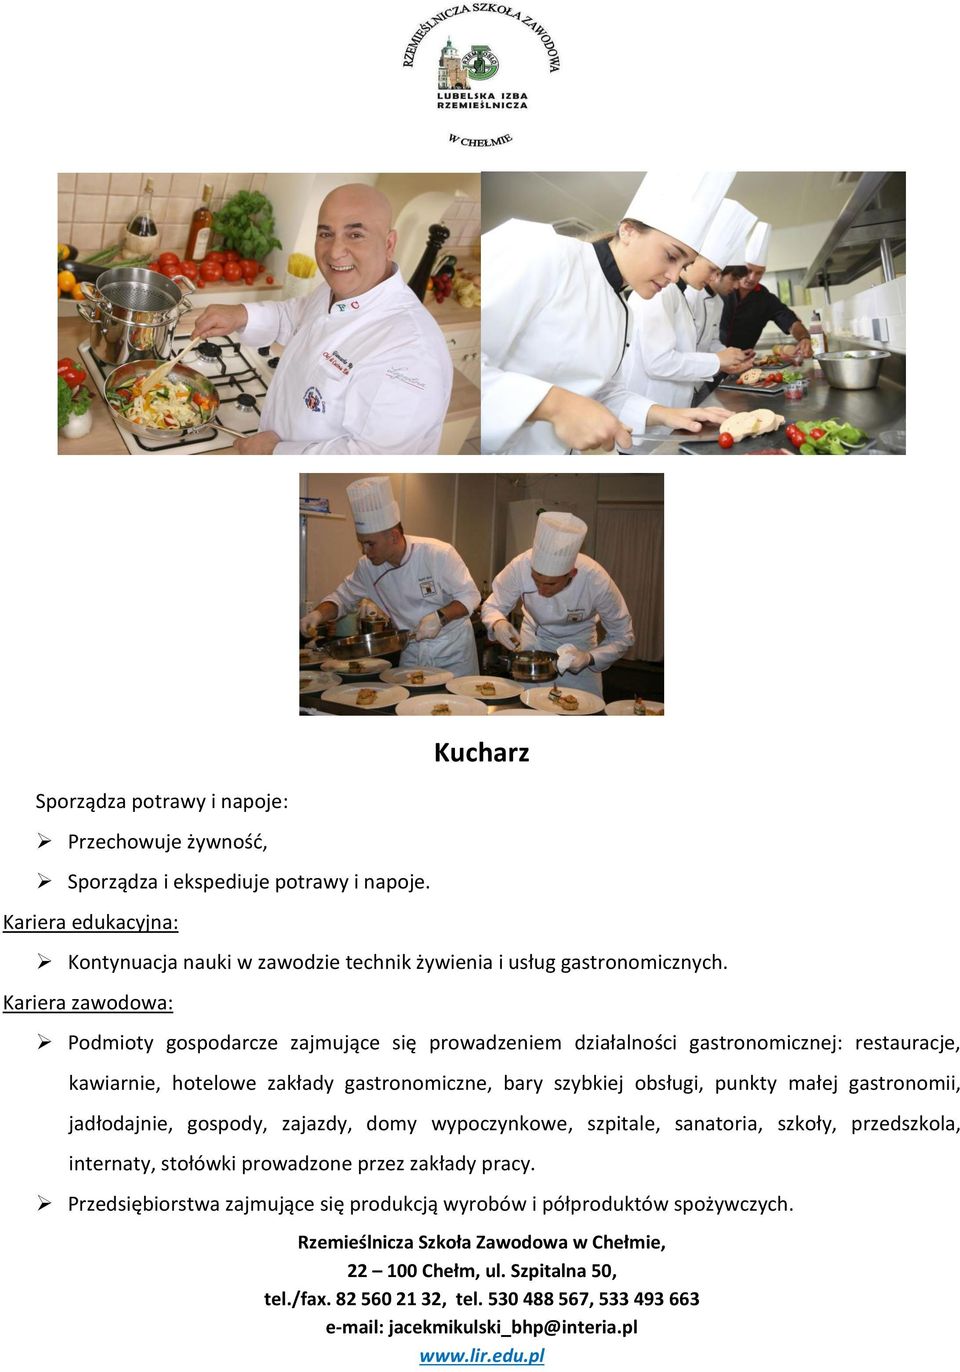 Podmioty gospodarcze zajmujące się prowadzeniem działalności gastronomicznej: restauracje, kawiarnie, hotelowe zakłady gastronomiczne, bary